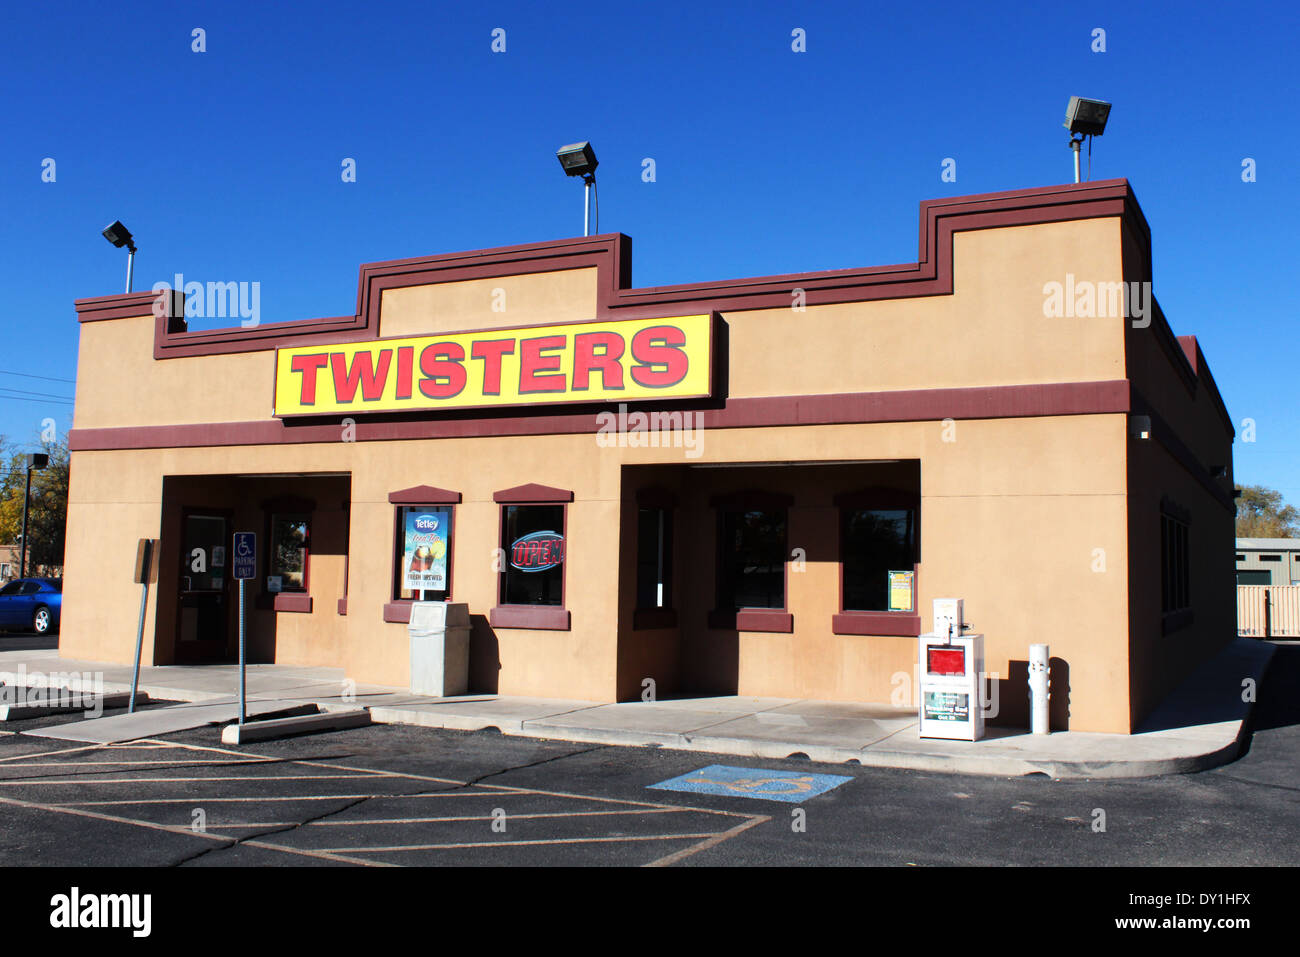 Rompiendo la mala ubicación de la TV, los pollos Hermanos, Twisters restaurante, Albuquerque, Nuevo México, EE.UU. Foto de stock